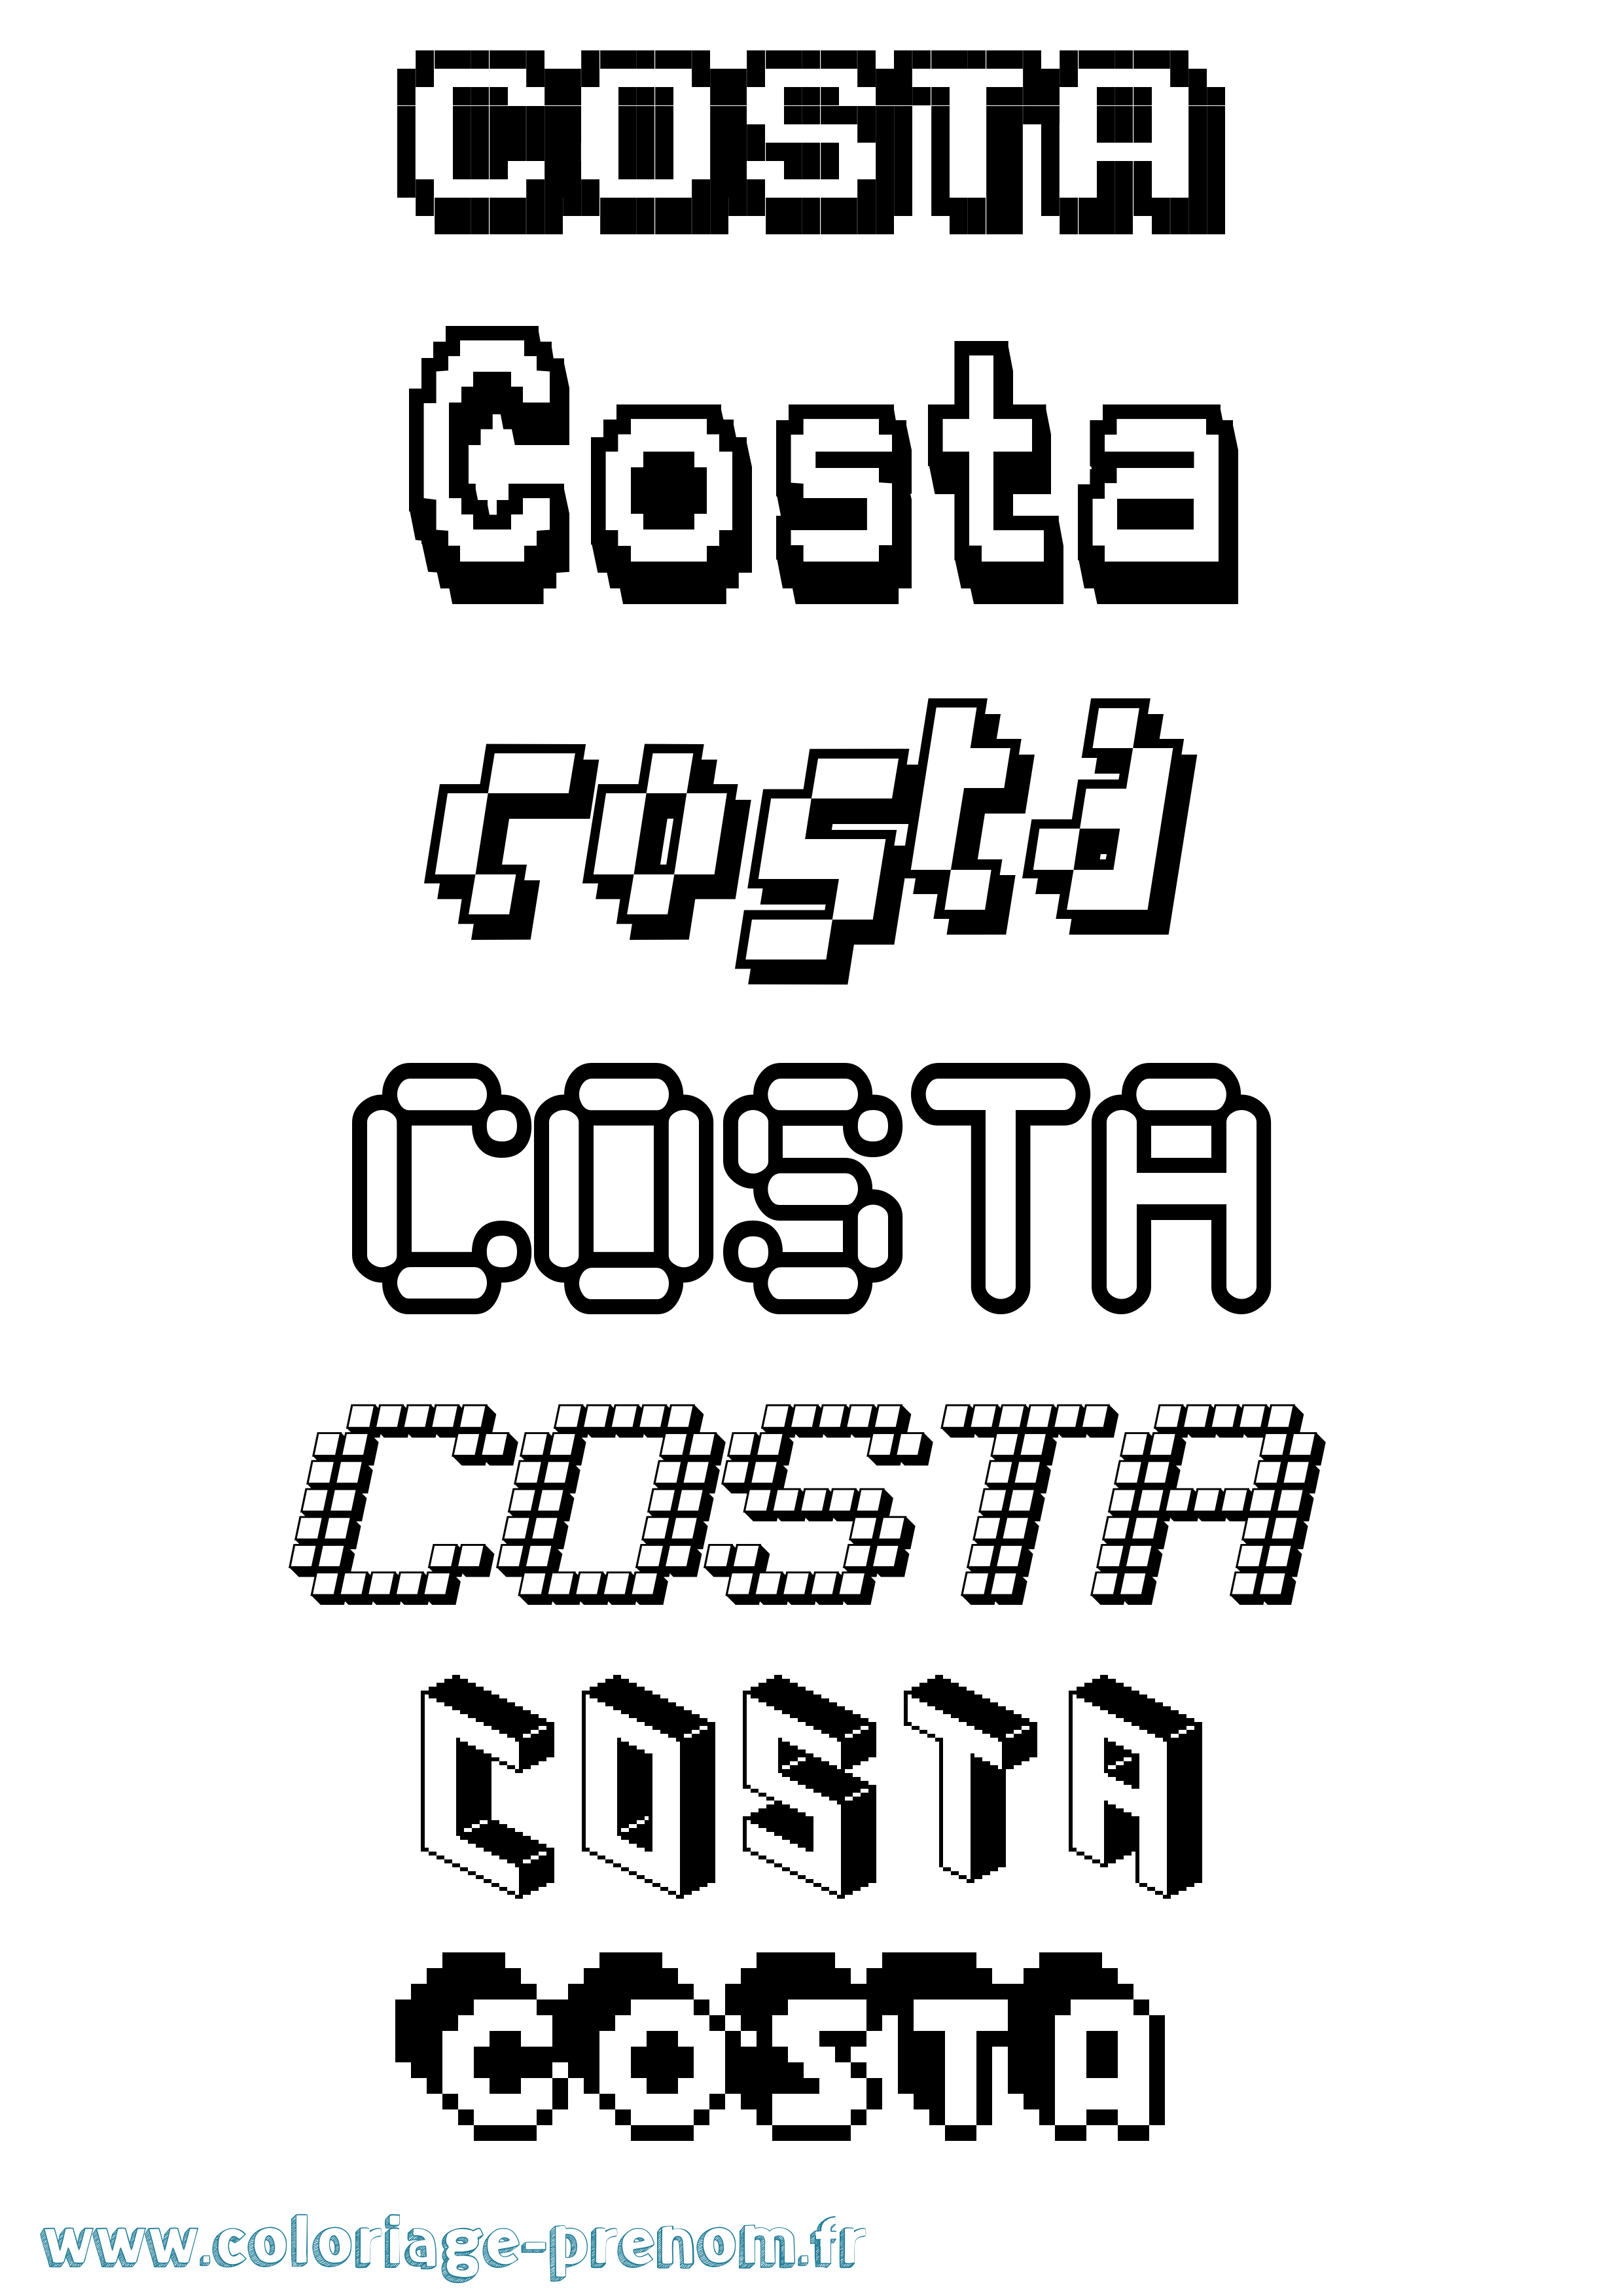 Coloriage prénom Costa Pixel